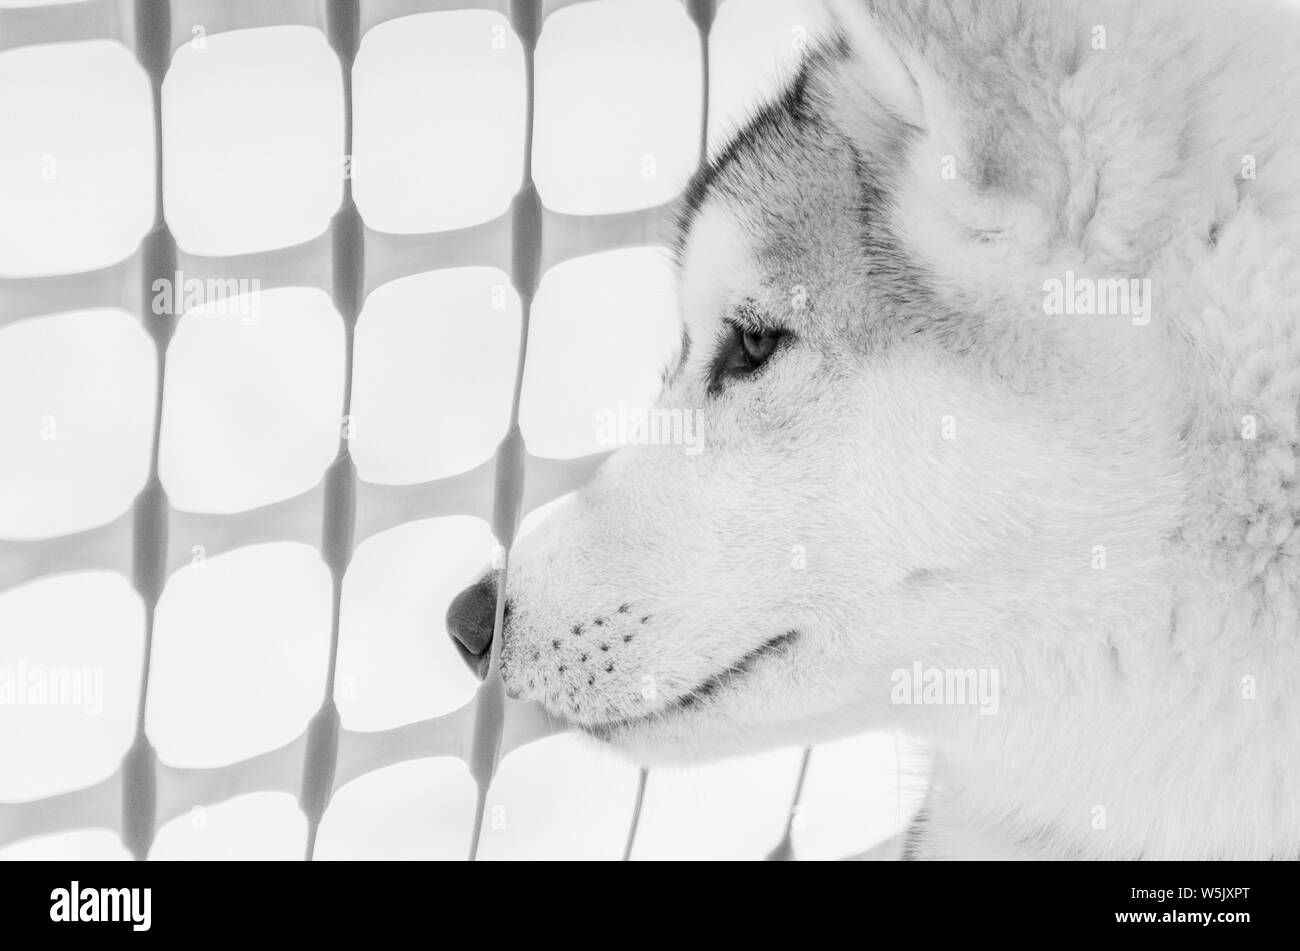 Portrait de chien husky de Sibérie à l'arrière-plan de clôture. Préparation de course de chiens de traîneau. Close up race Husky face. Photo en noir et blanc. Banque D'Images